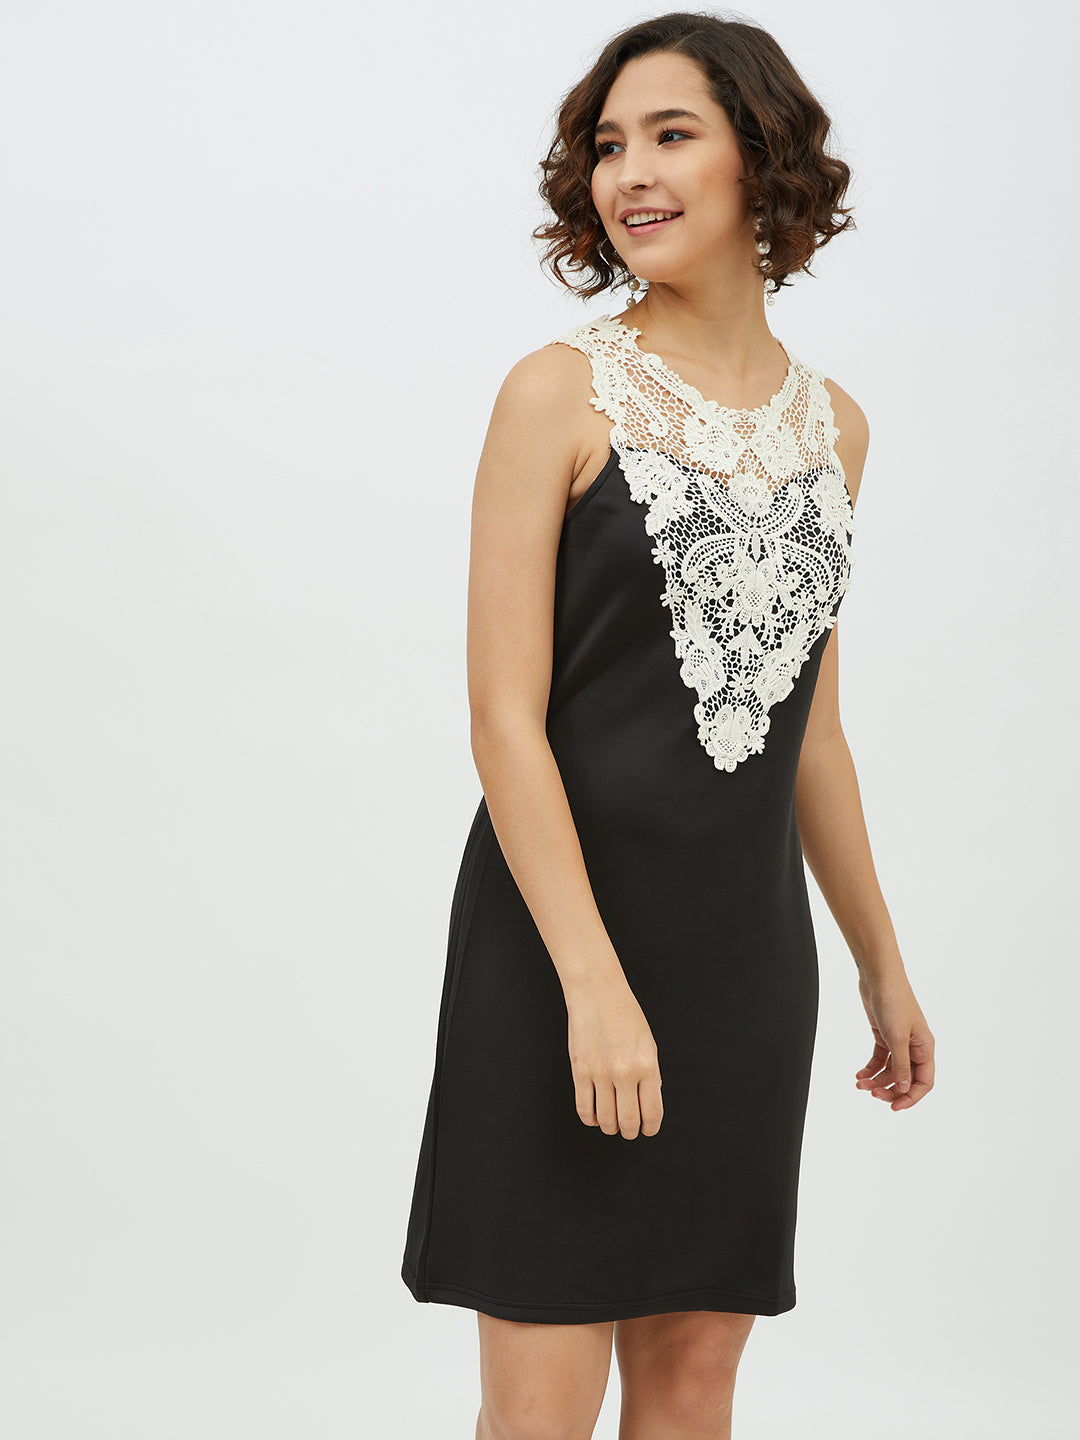 Women's Crochet Lace Black Dress - StyleStone